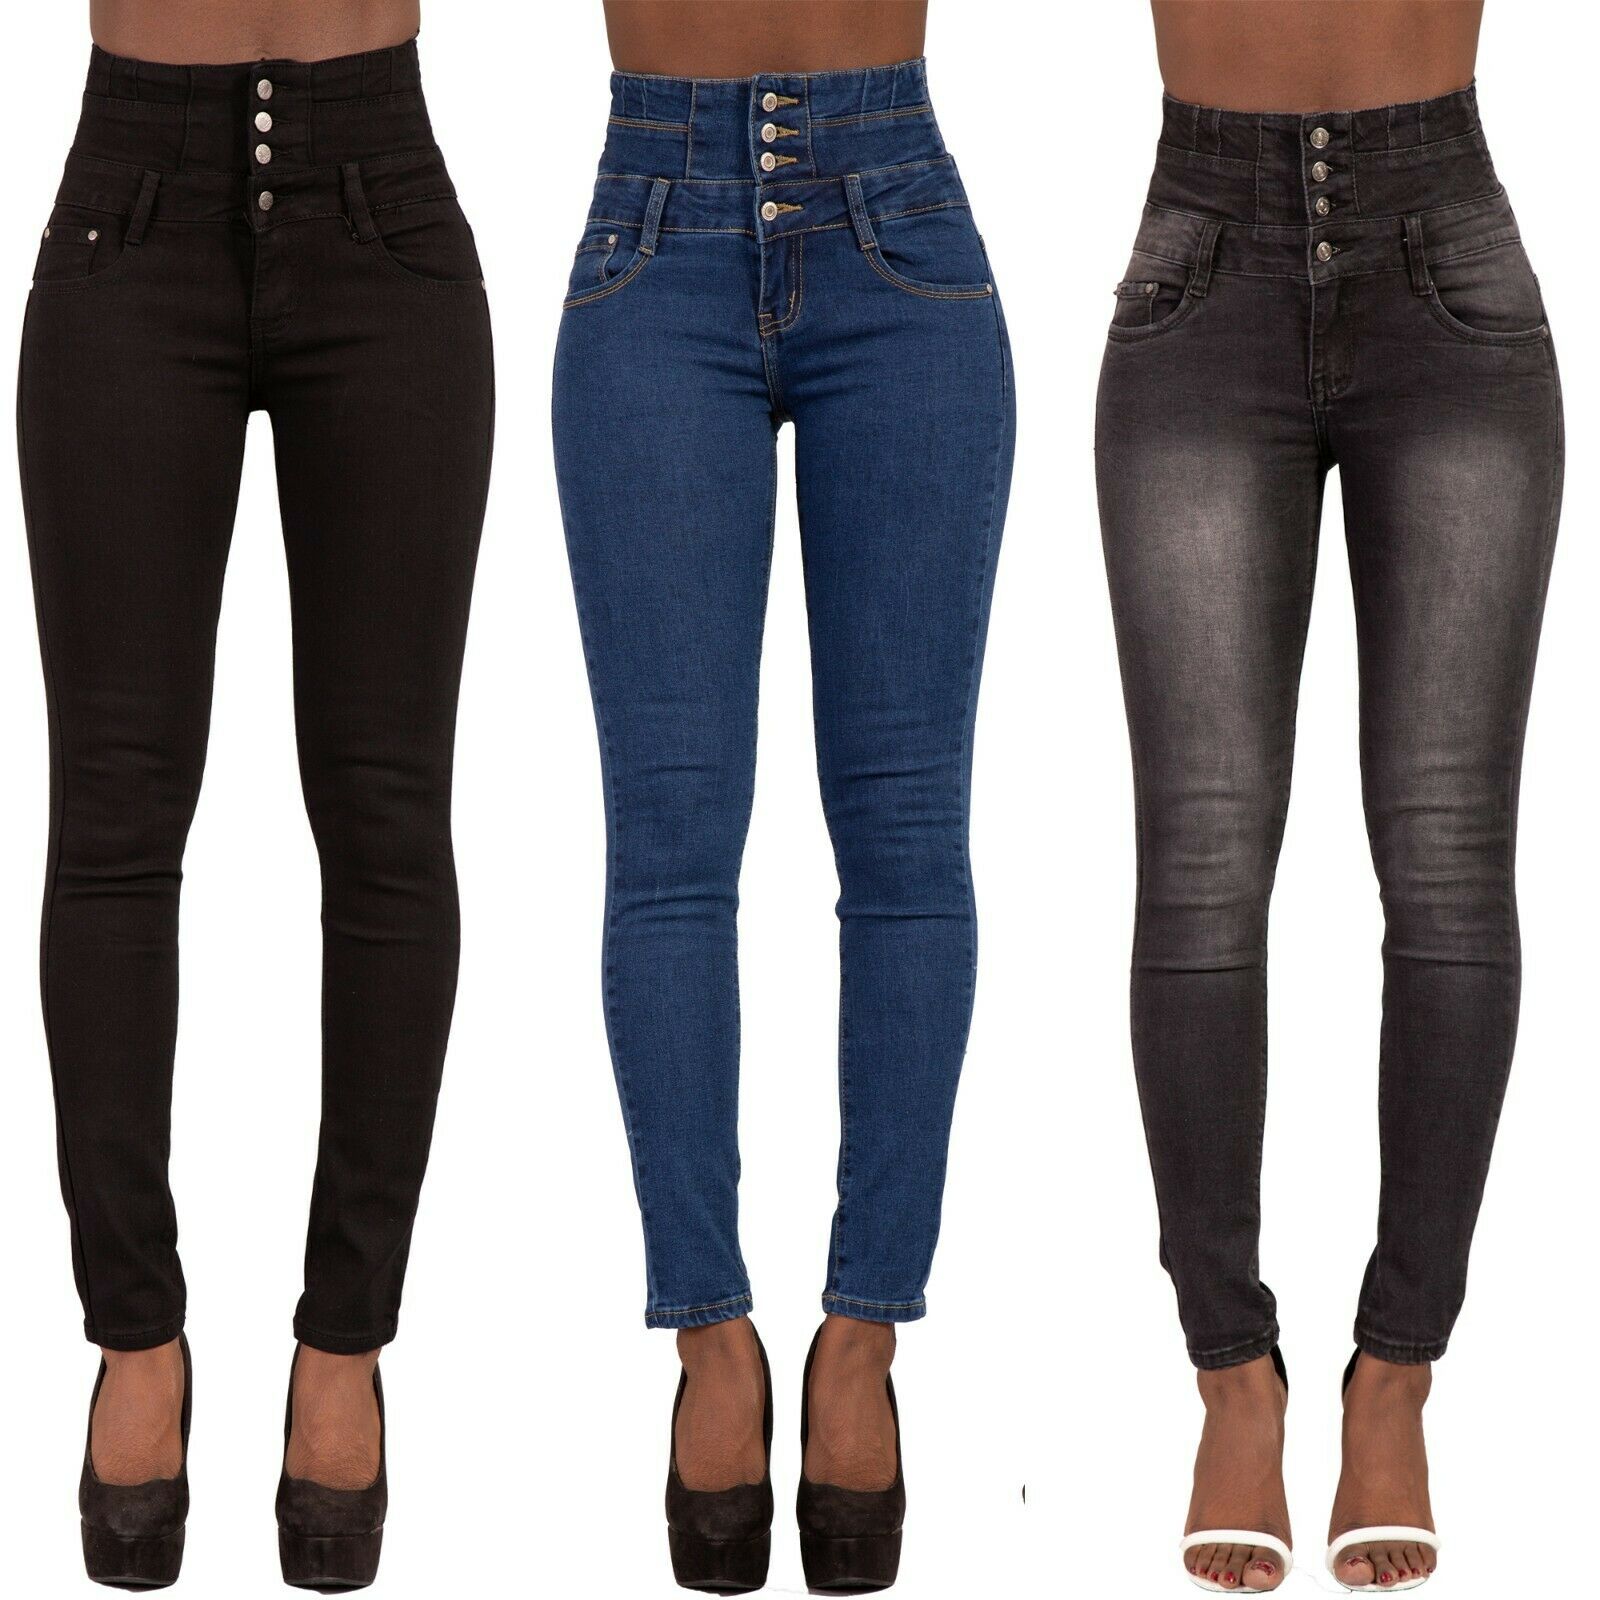 black skinny jeans size 16